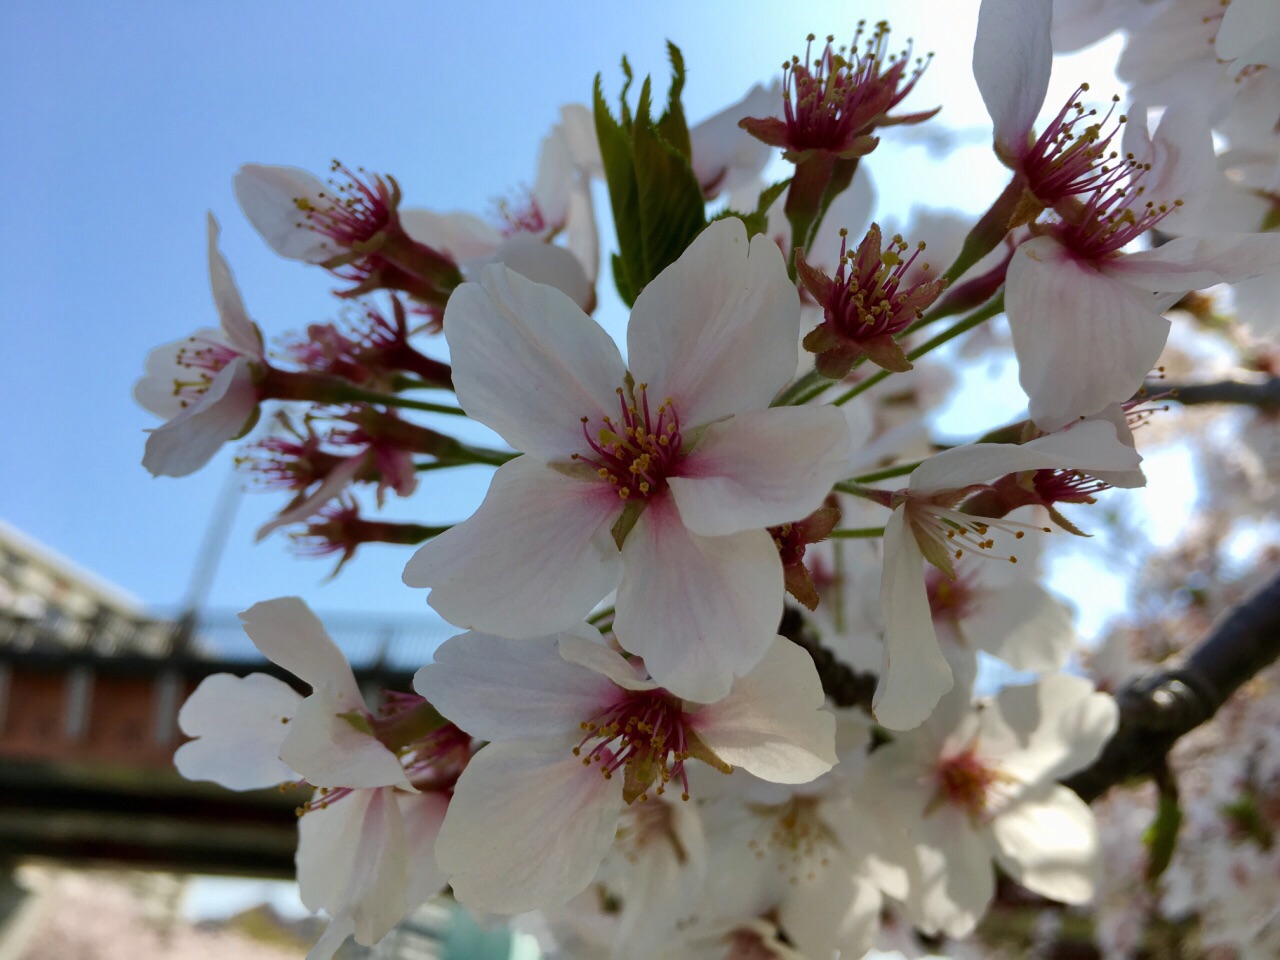 樱花🌸之巅： 红粉白雪竟娇艳，花不自醉人自醉  东京迎来了今年最美妙与灿烂阳光：樱花🌸盛开之时。不愧